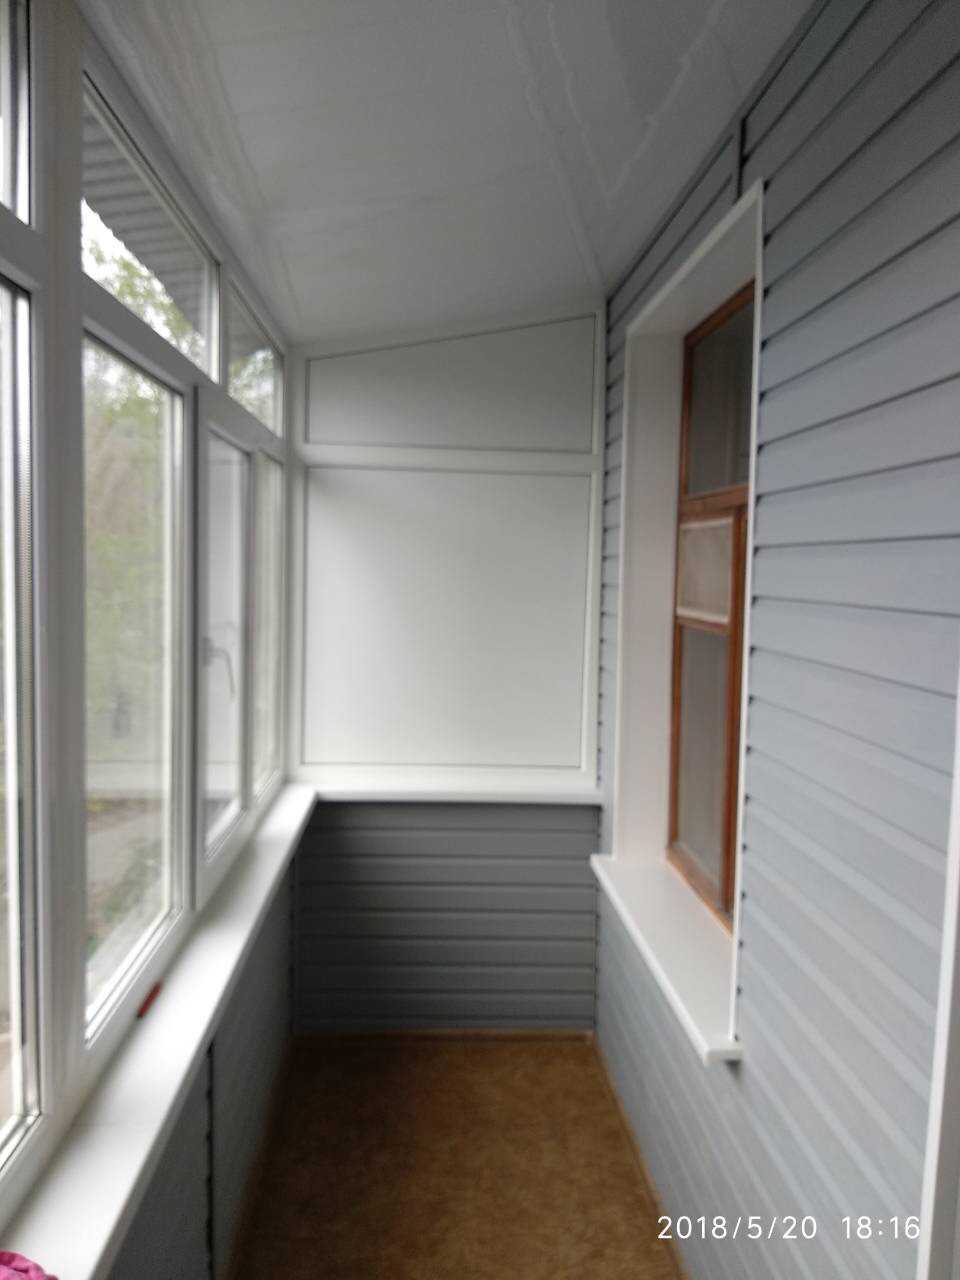 Отделка балкона мдф панелями - обзор лучших вариантов +фото